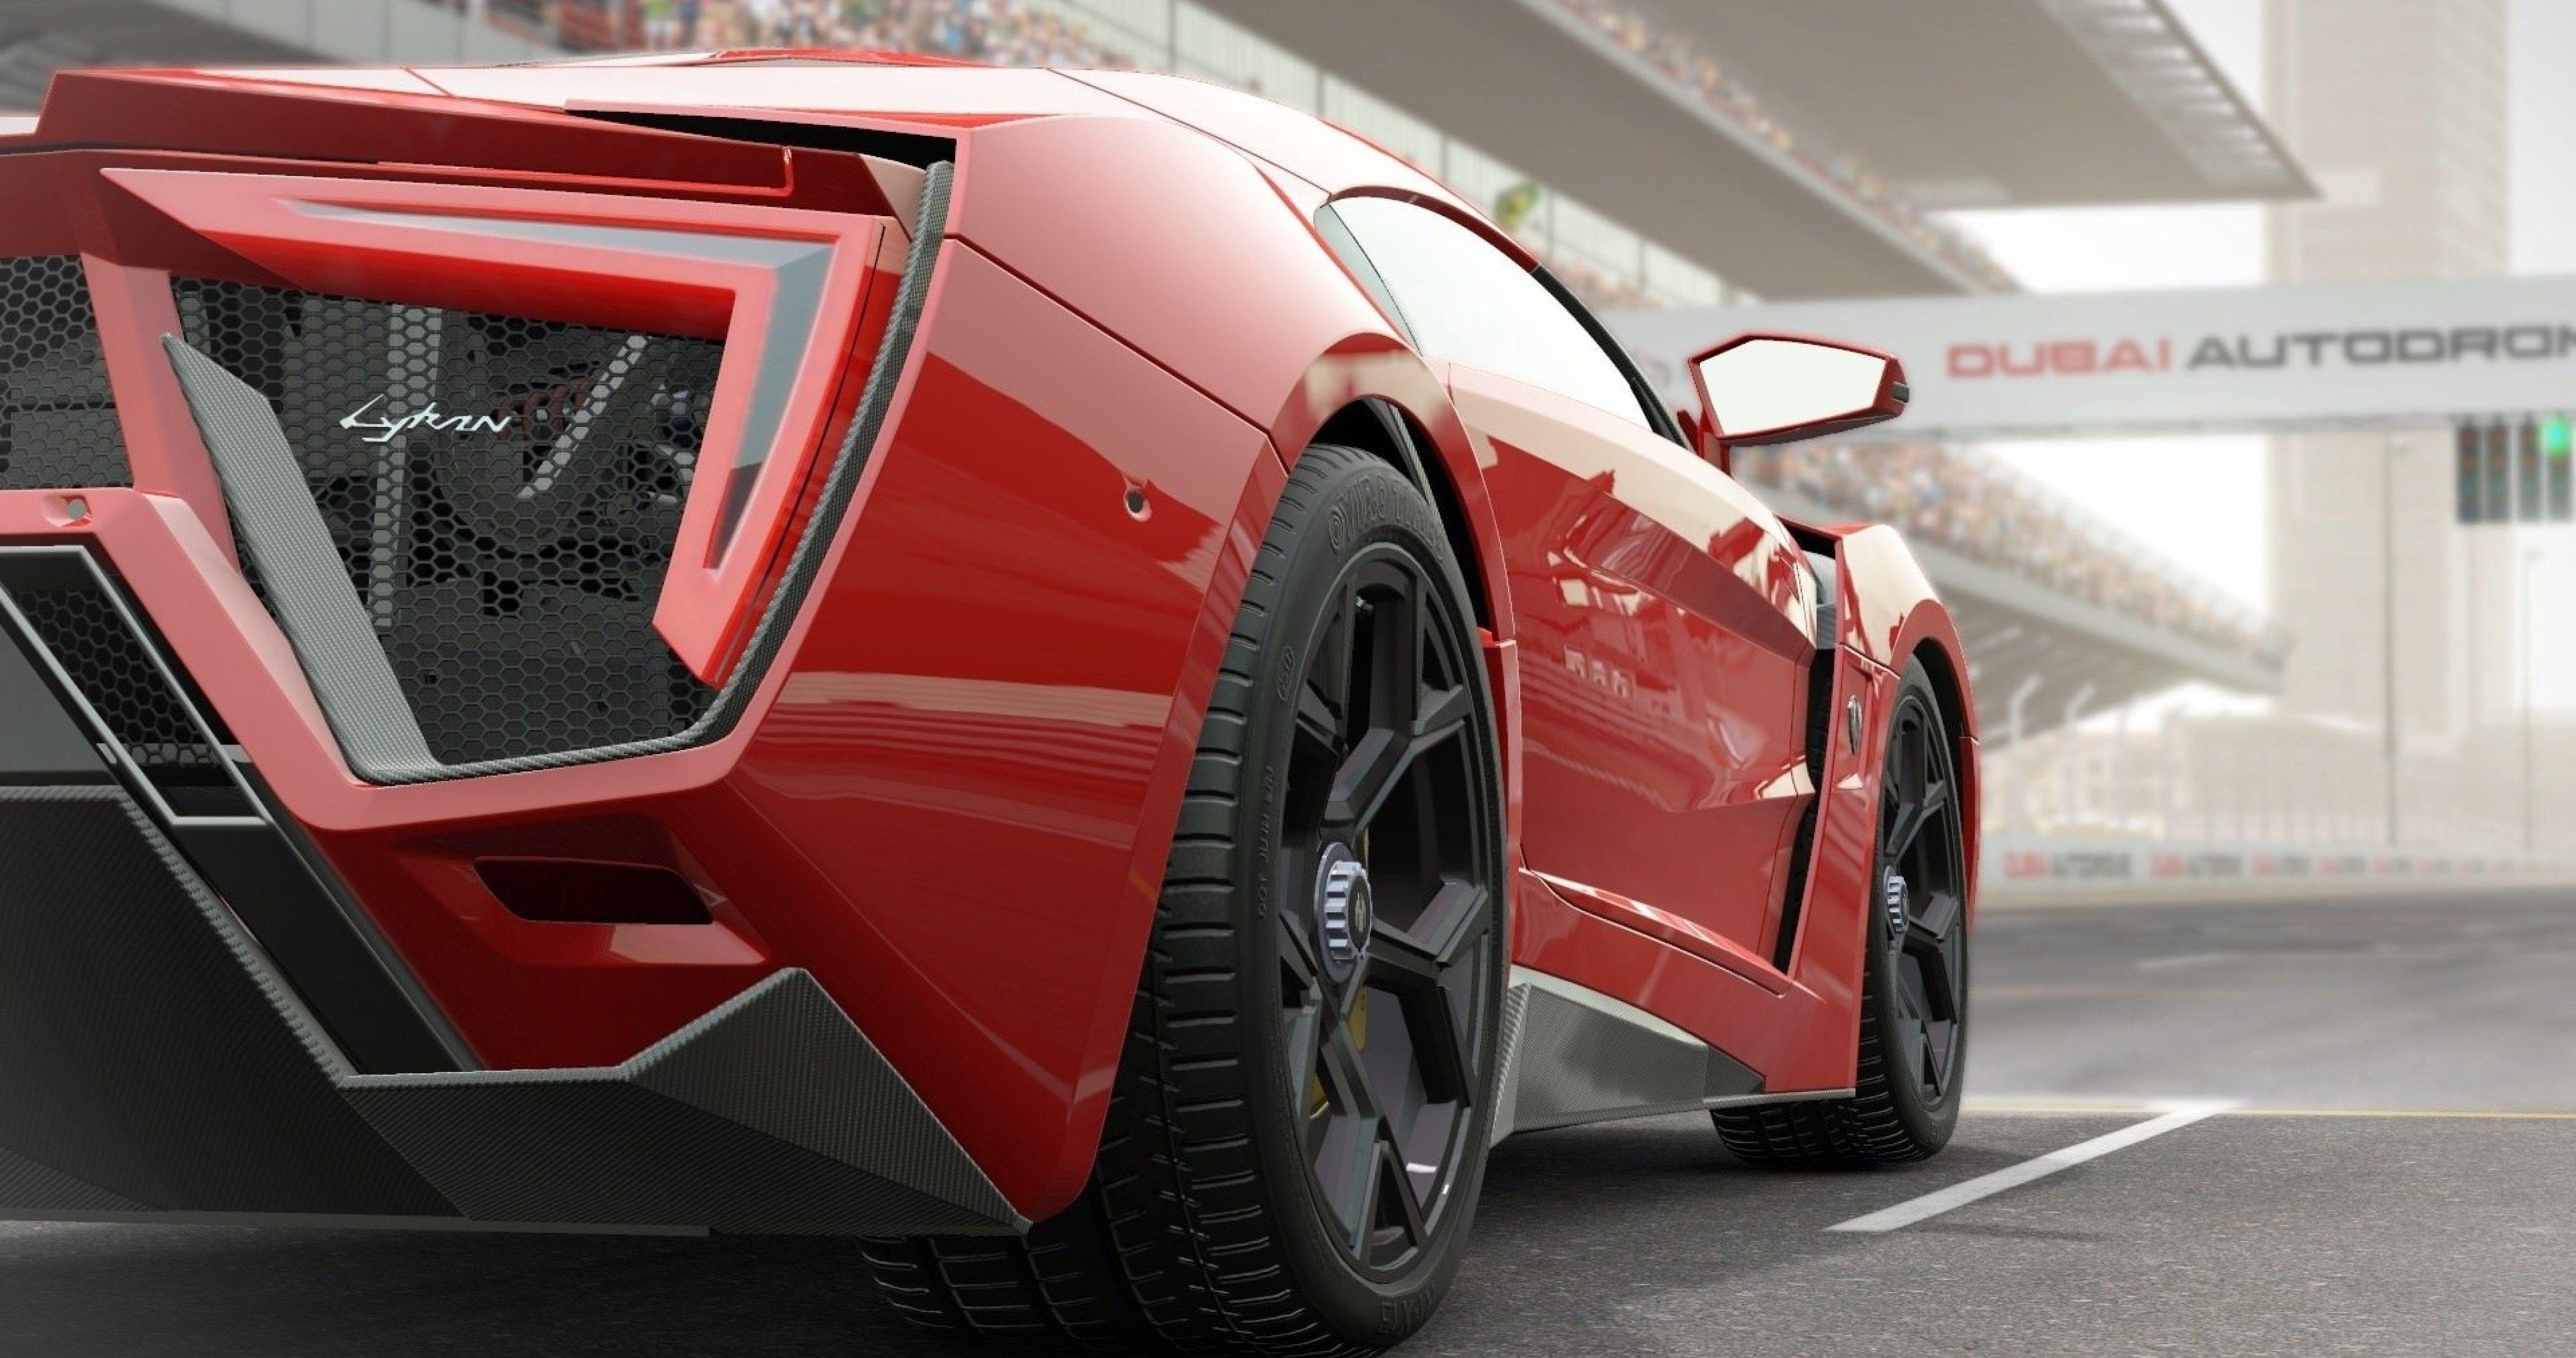 project cars game 4k ultra HD 2019 Cars, 2020 Cars, 4k, 4K 5K, 4k car wallpaper, 4k cars, Car, car wallpape. Lykan hypersport, Car wallpaper, Supercars wallpaper